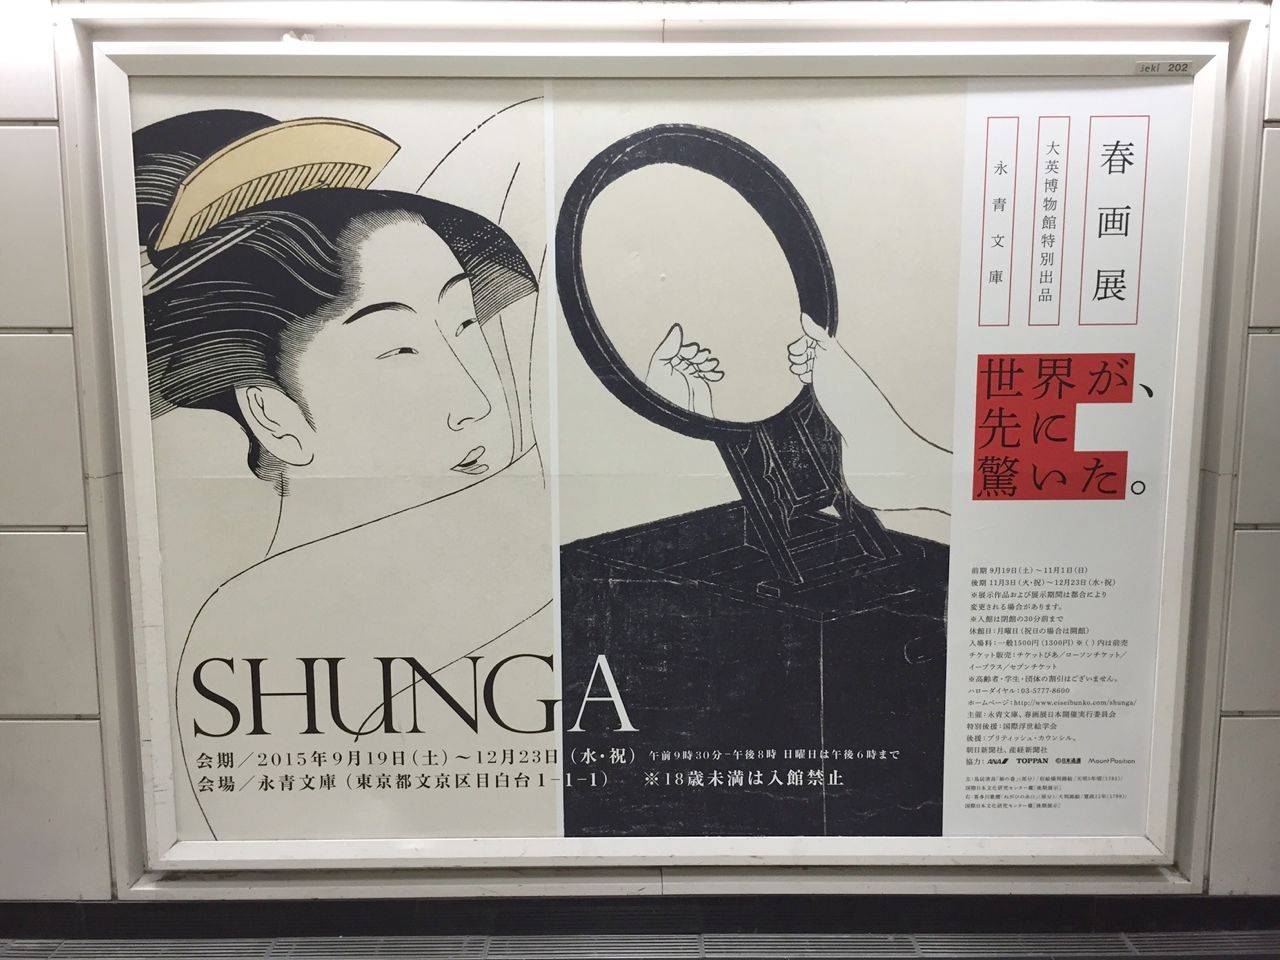 永青文庫『SHUNGA 春画展』のお知らせ : 丘の上から通信